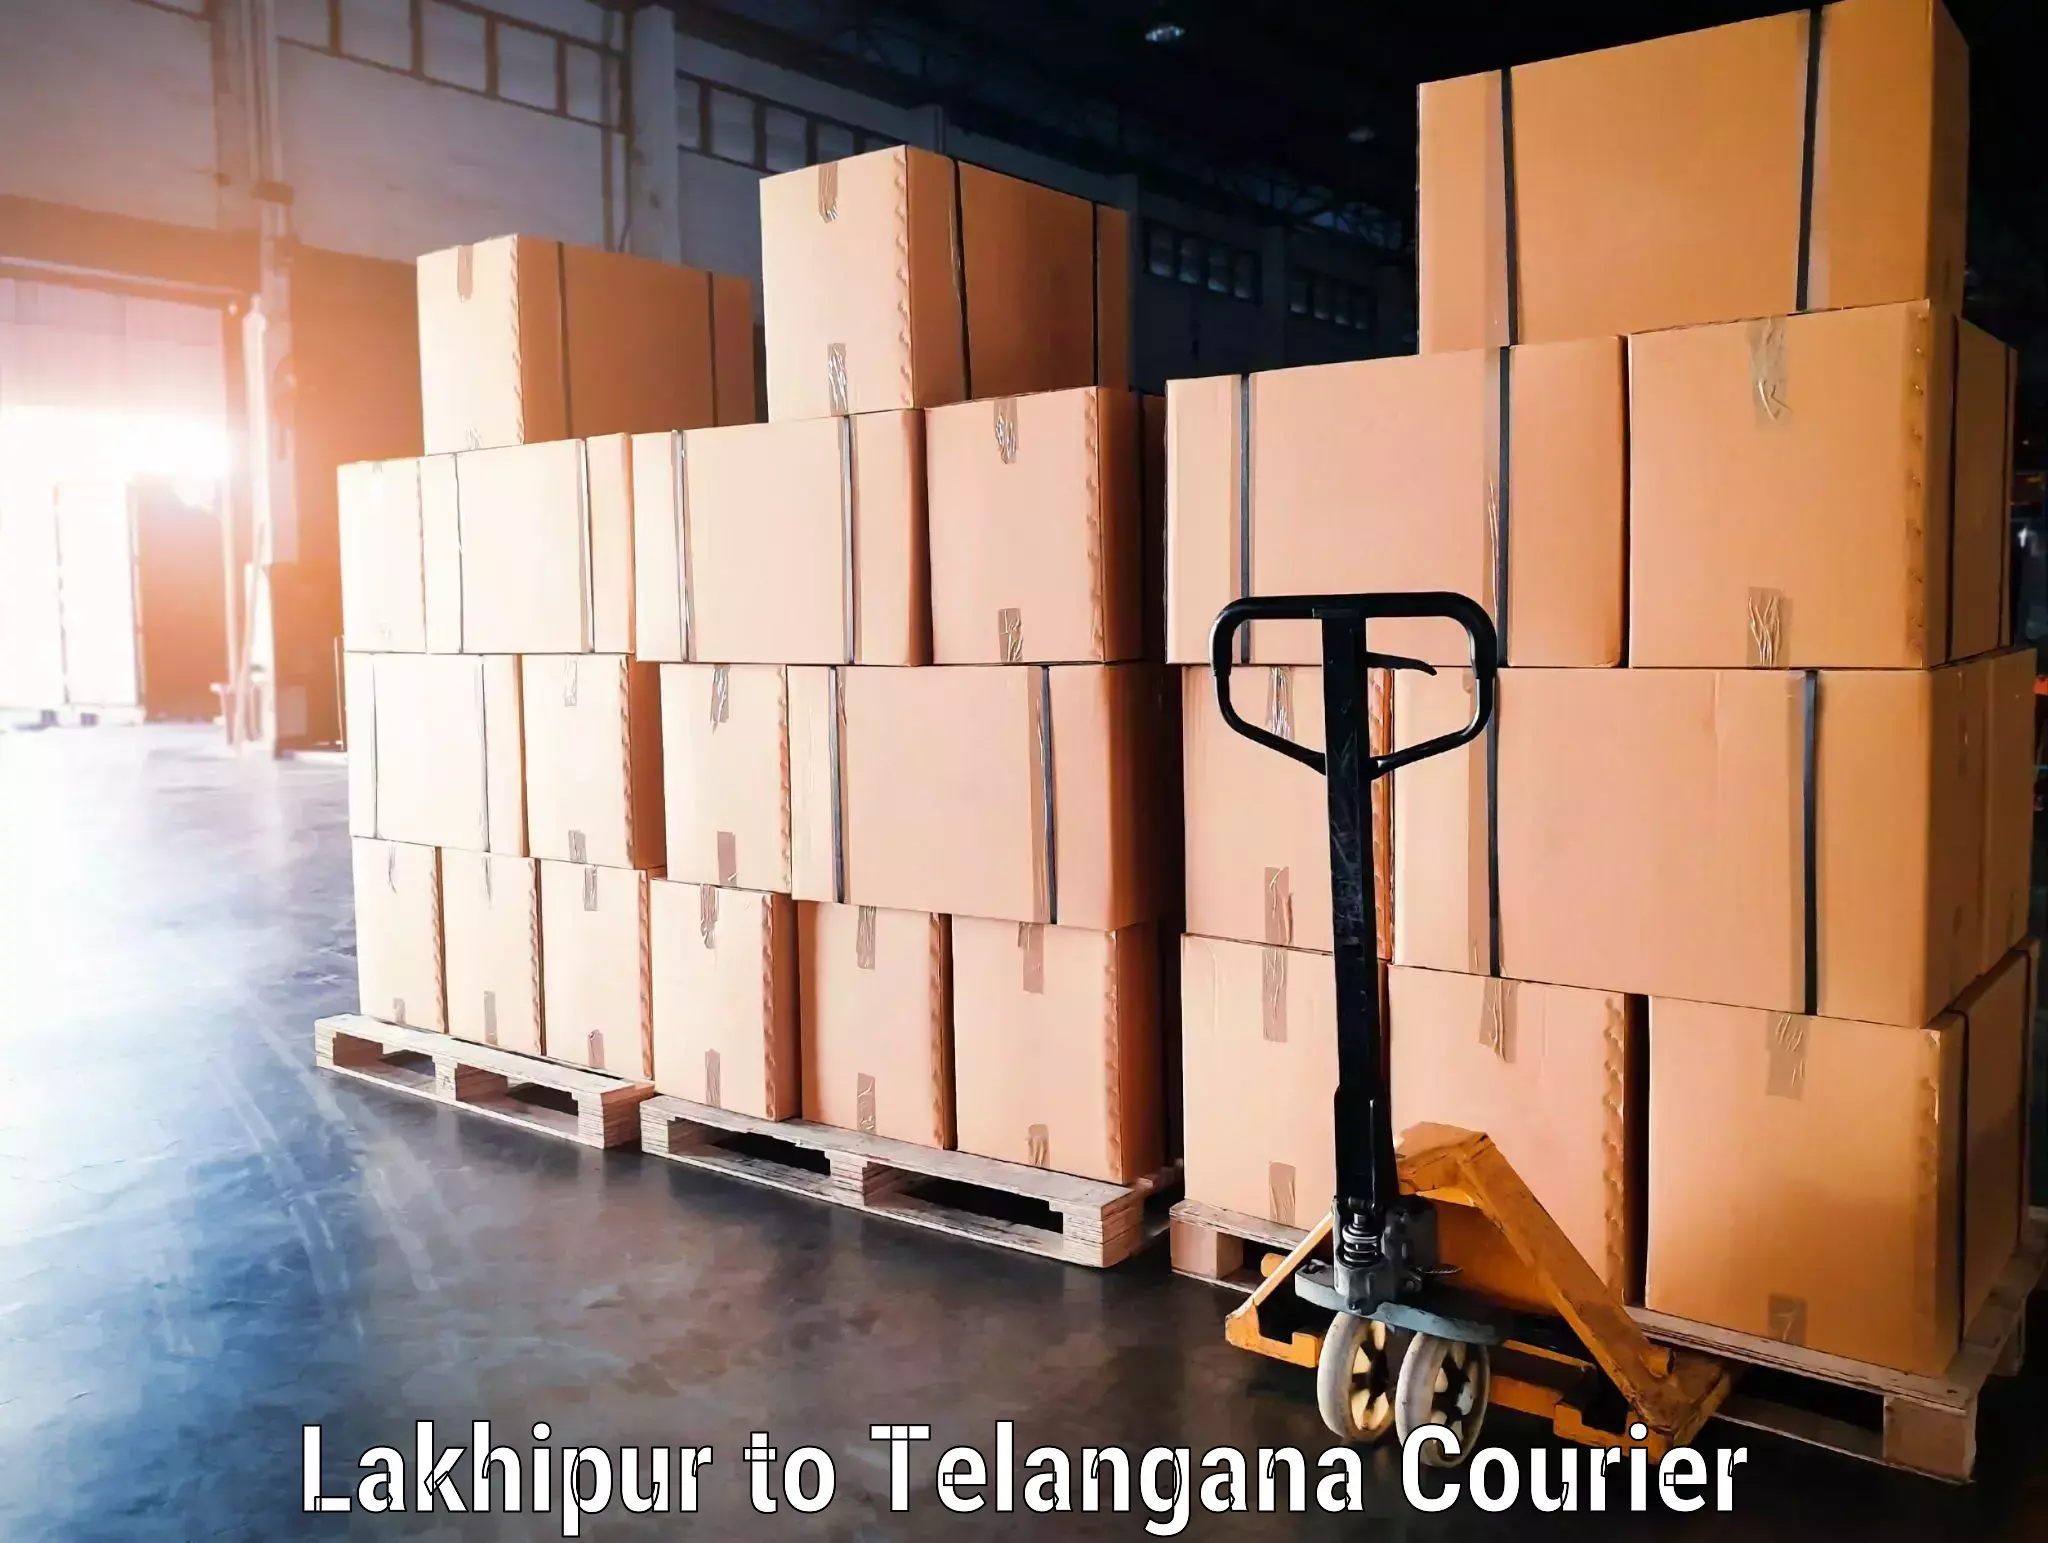 Luggage shipment specialists Lakhipur to Huzurabad